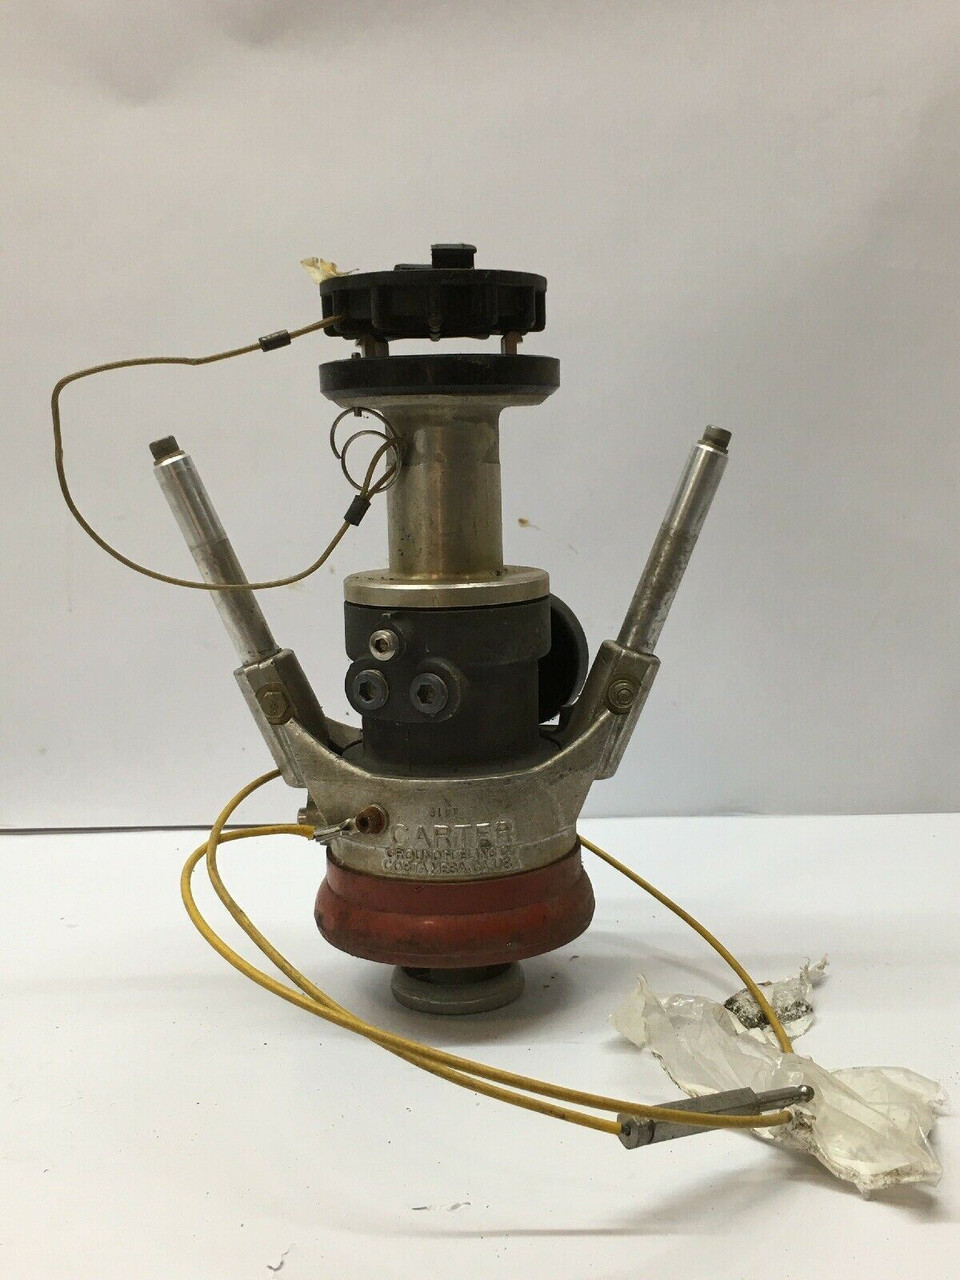 Nozzle Press Fuel Servicing Patent No. 4567924 Aircraft Refueling